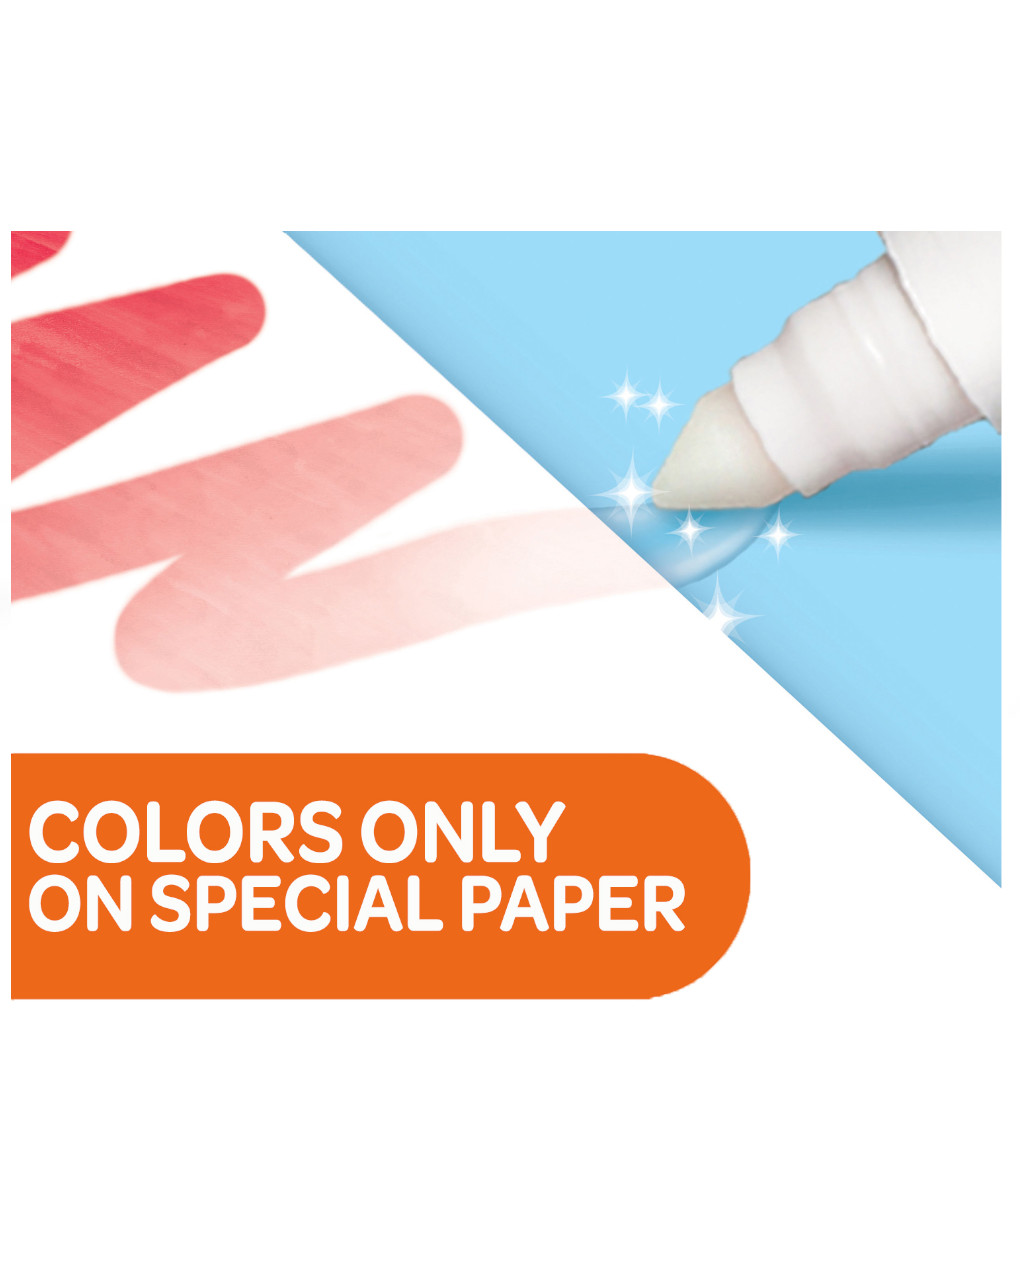 Libro para colorear con el tema de los números bluey - crayola - Crayola